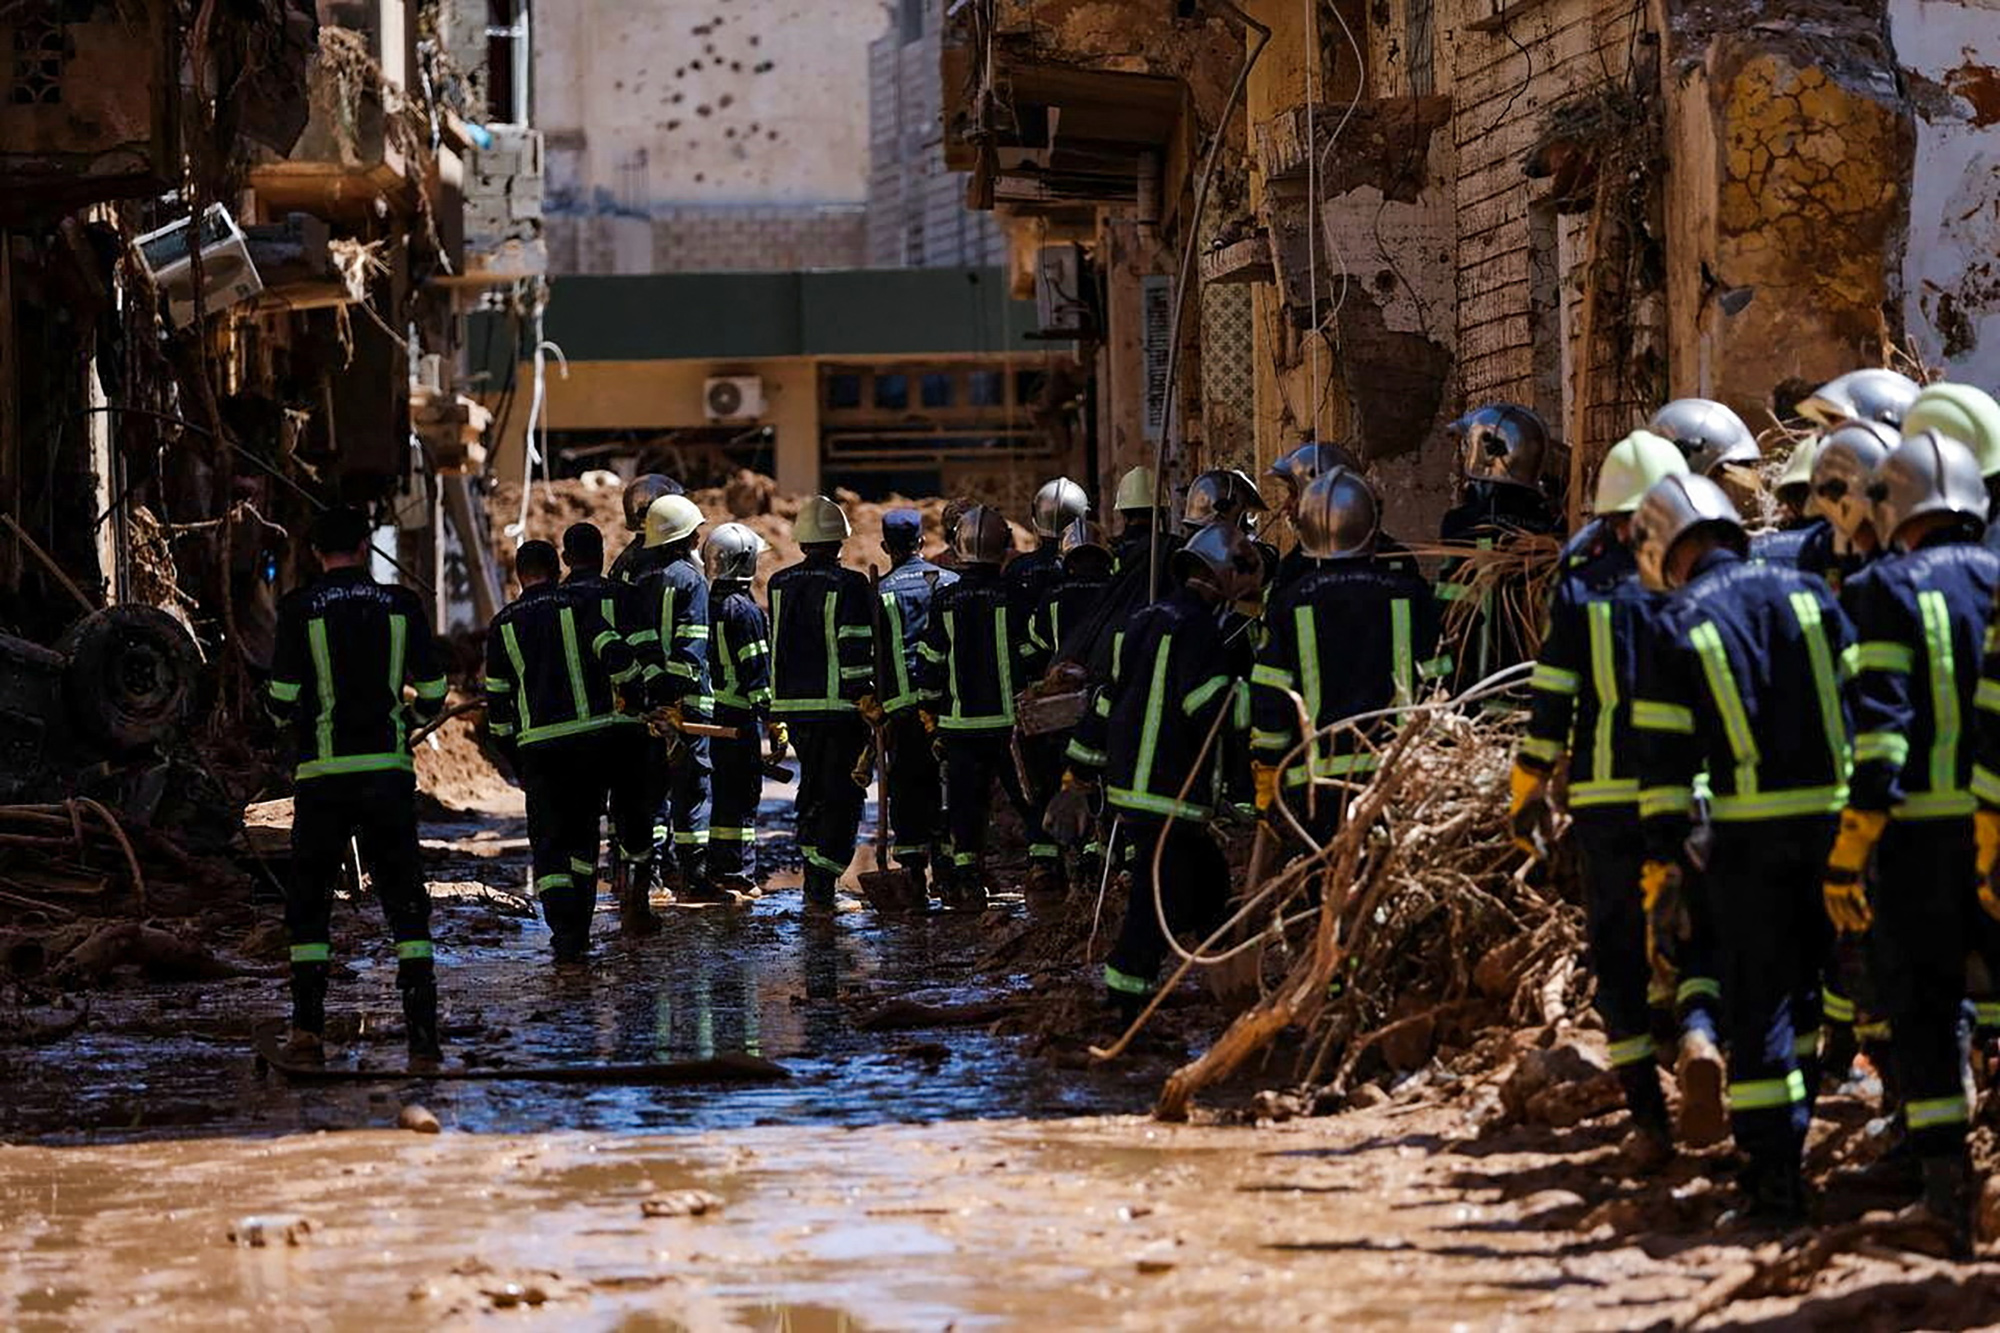 Спасатели из Египта обследуют разрушенные районы в Дерне, 13 сентября

Координатор чрезвычайной помощи ООН Мартин Гриффитс 15 сентября заявил, что Ливии необходимо оборудование для поиска людей, застрявших в грязи и поврежденных зданиях после наводнений, а также первичная медико-санитарная помощь для предотвращения вспышки холеры среди выживших.